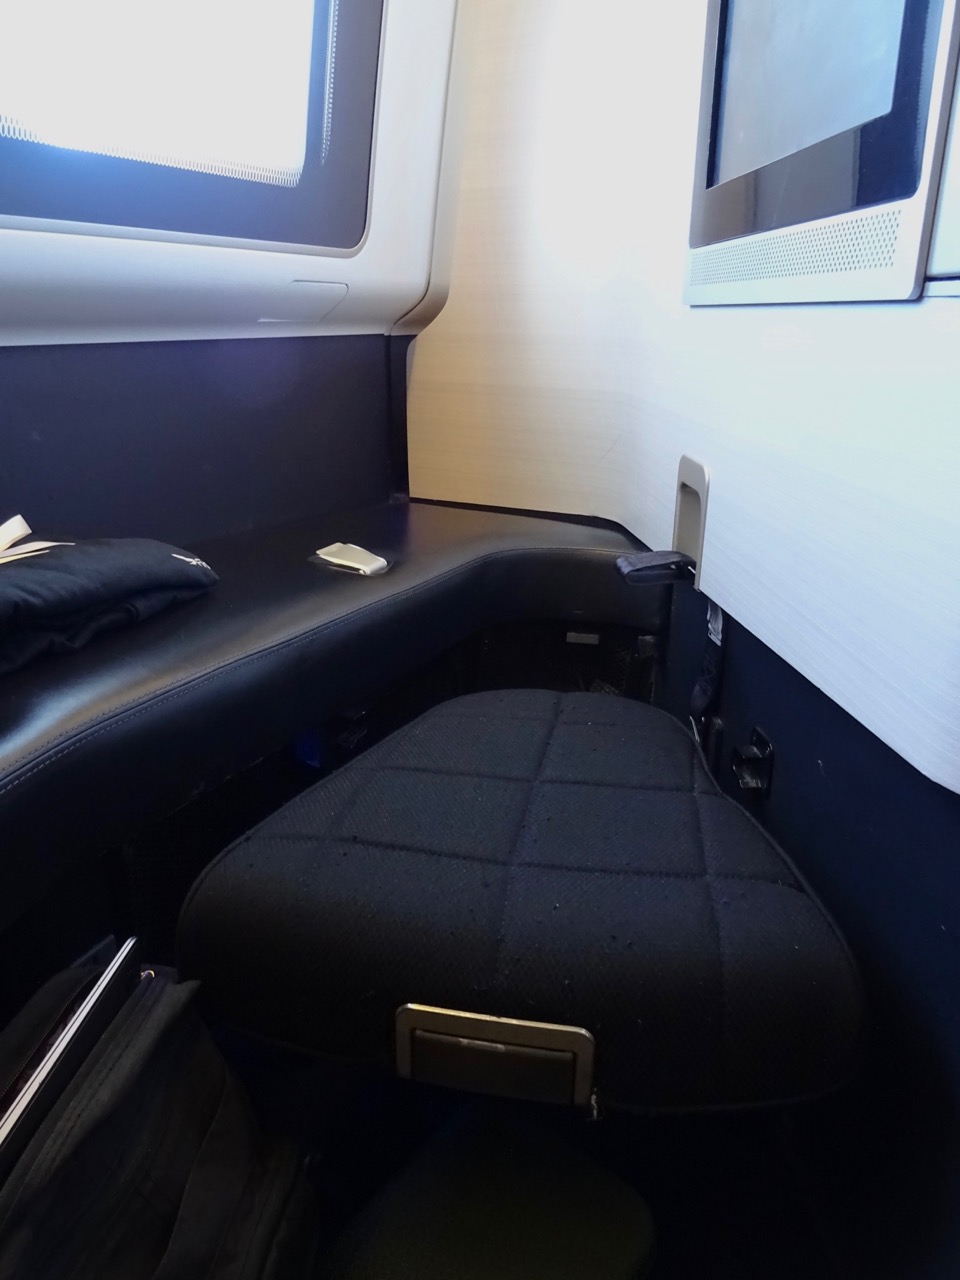 British Airways 777 First Class footstool